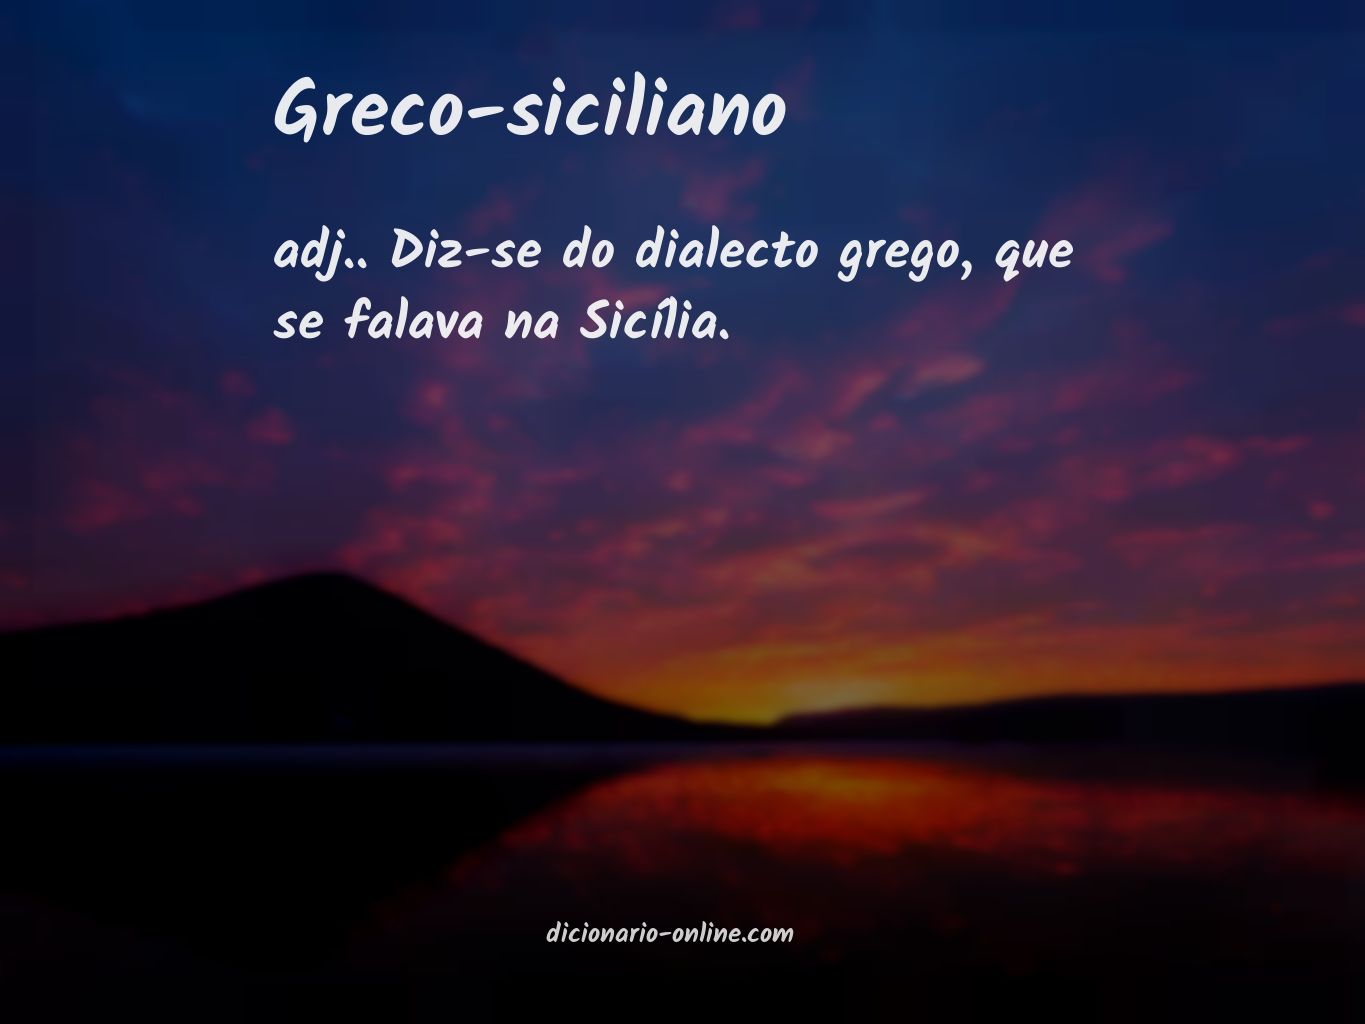 Significado de greco-siciliano